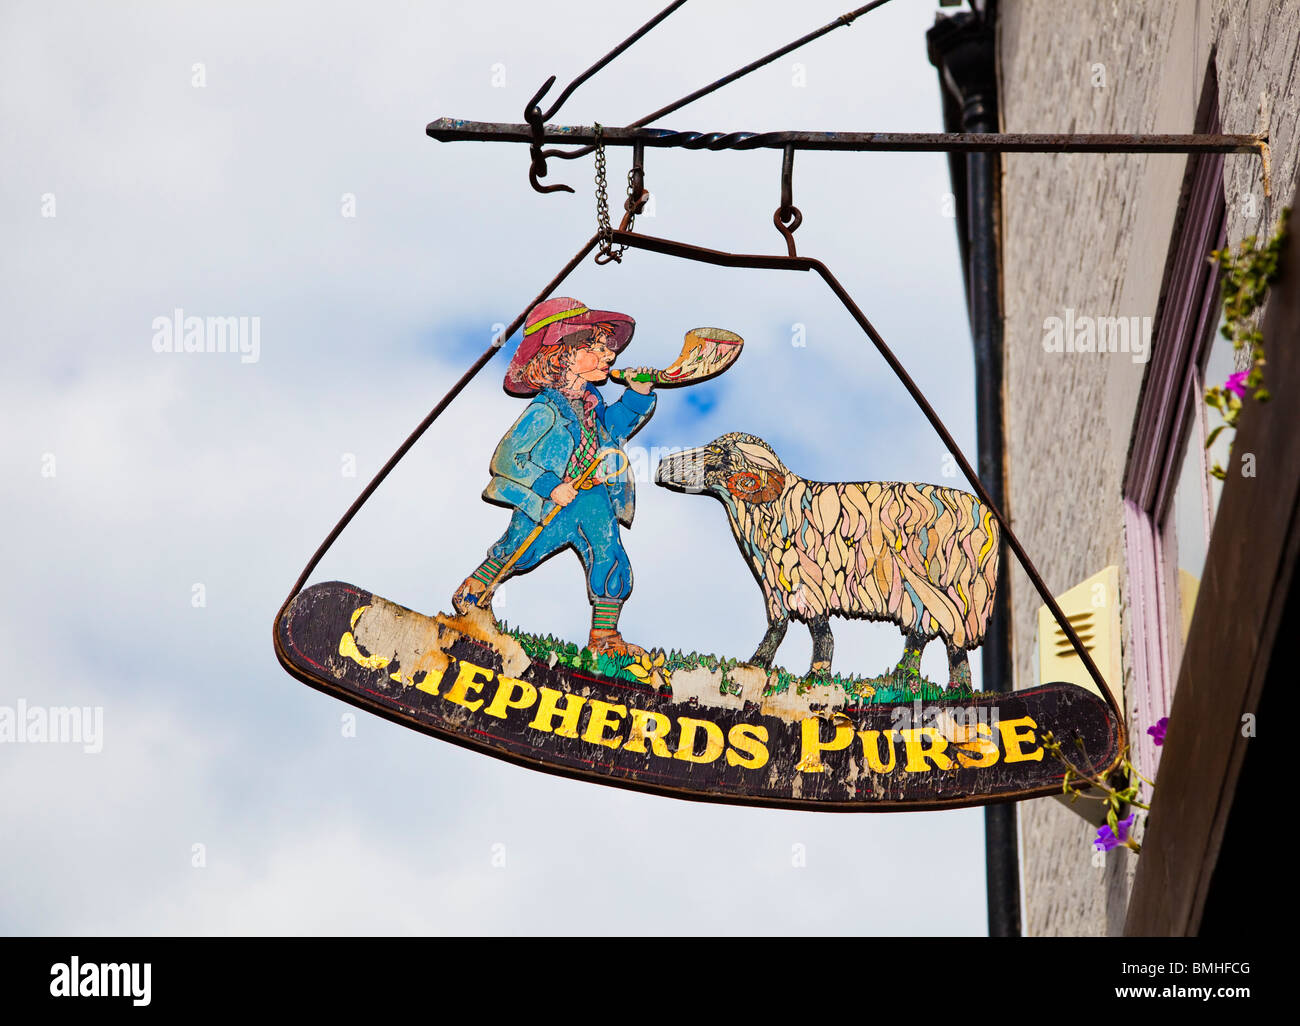 Le Shepherds Purse UK traditionnel pub affichage à Whitby, North Yorkshire, UK Banque D'Images